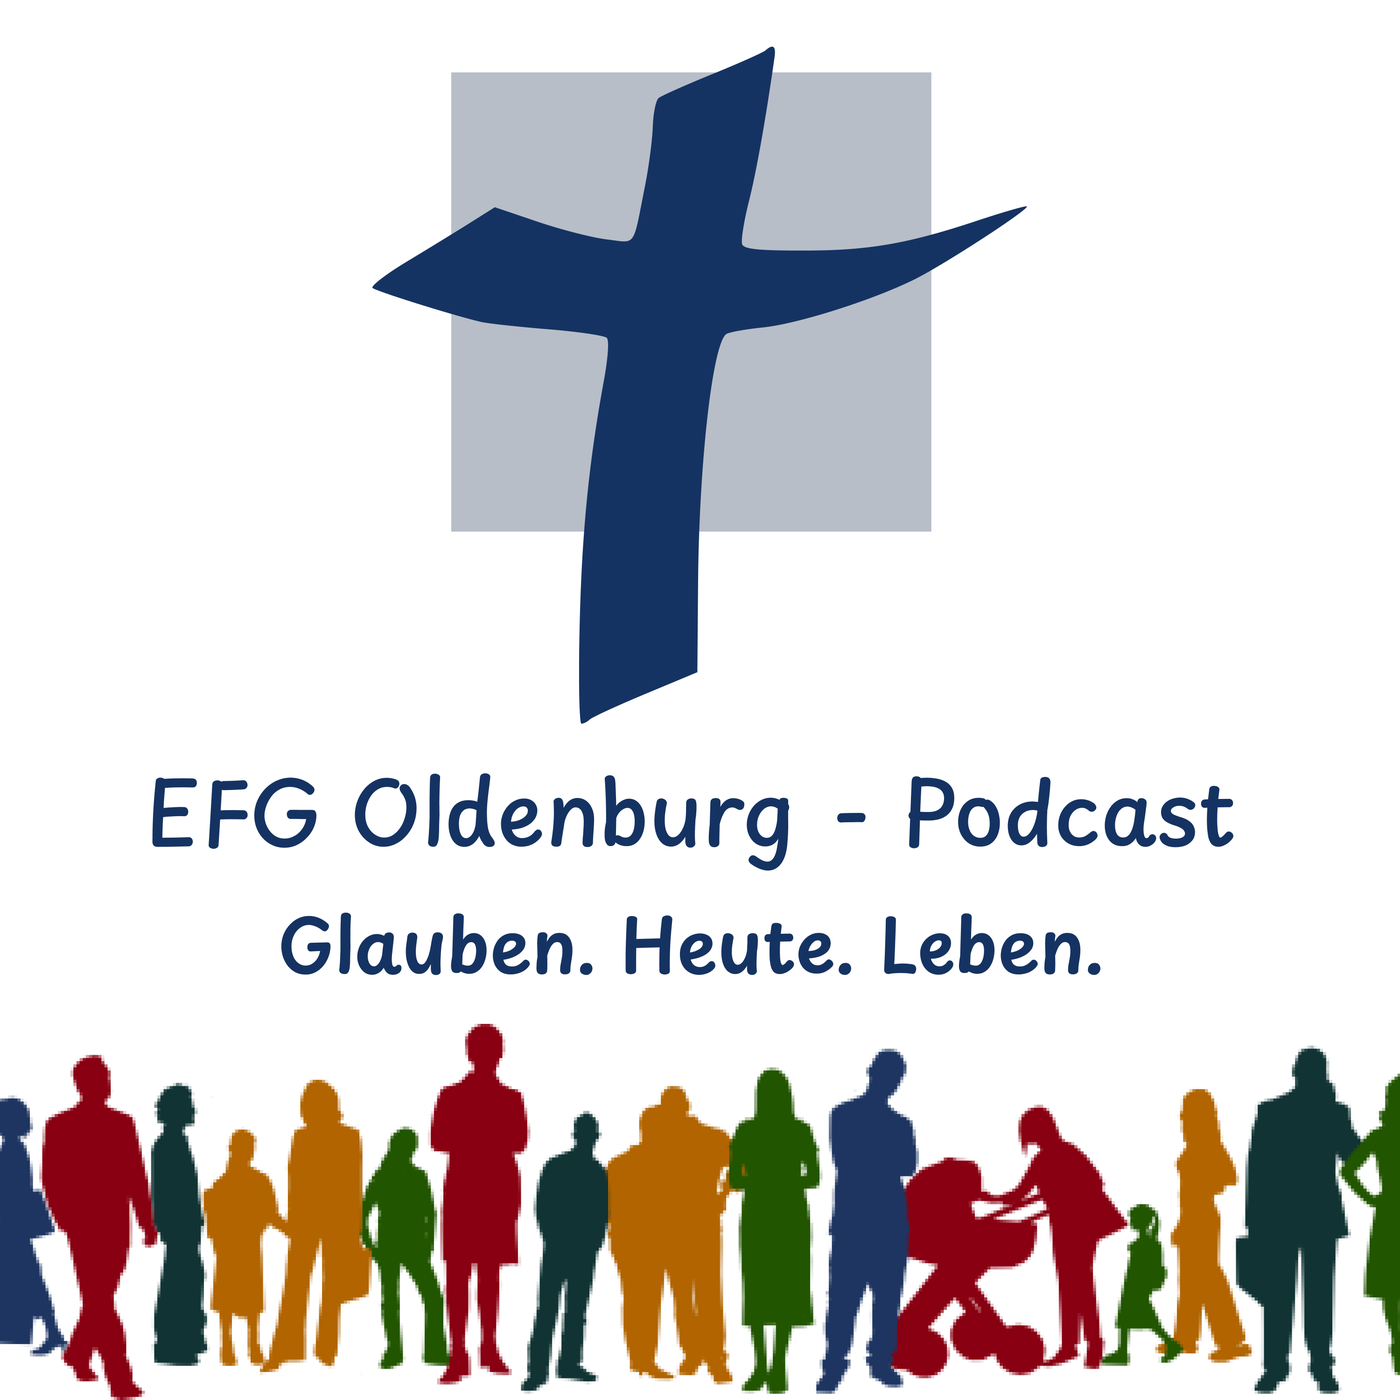 EFG Oldenburg - Glauben. Heute. Leben.